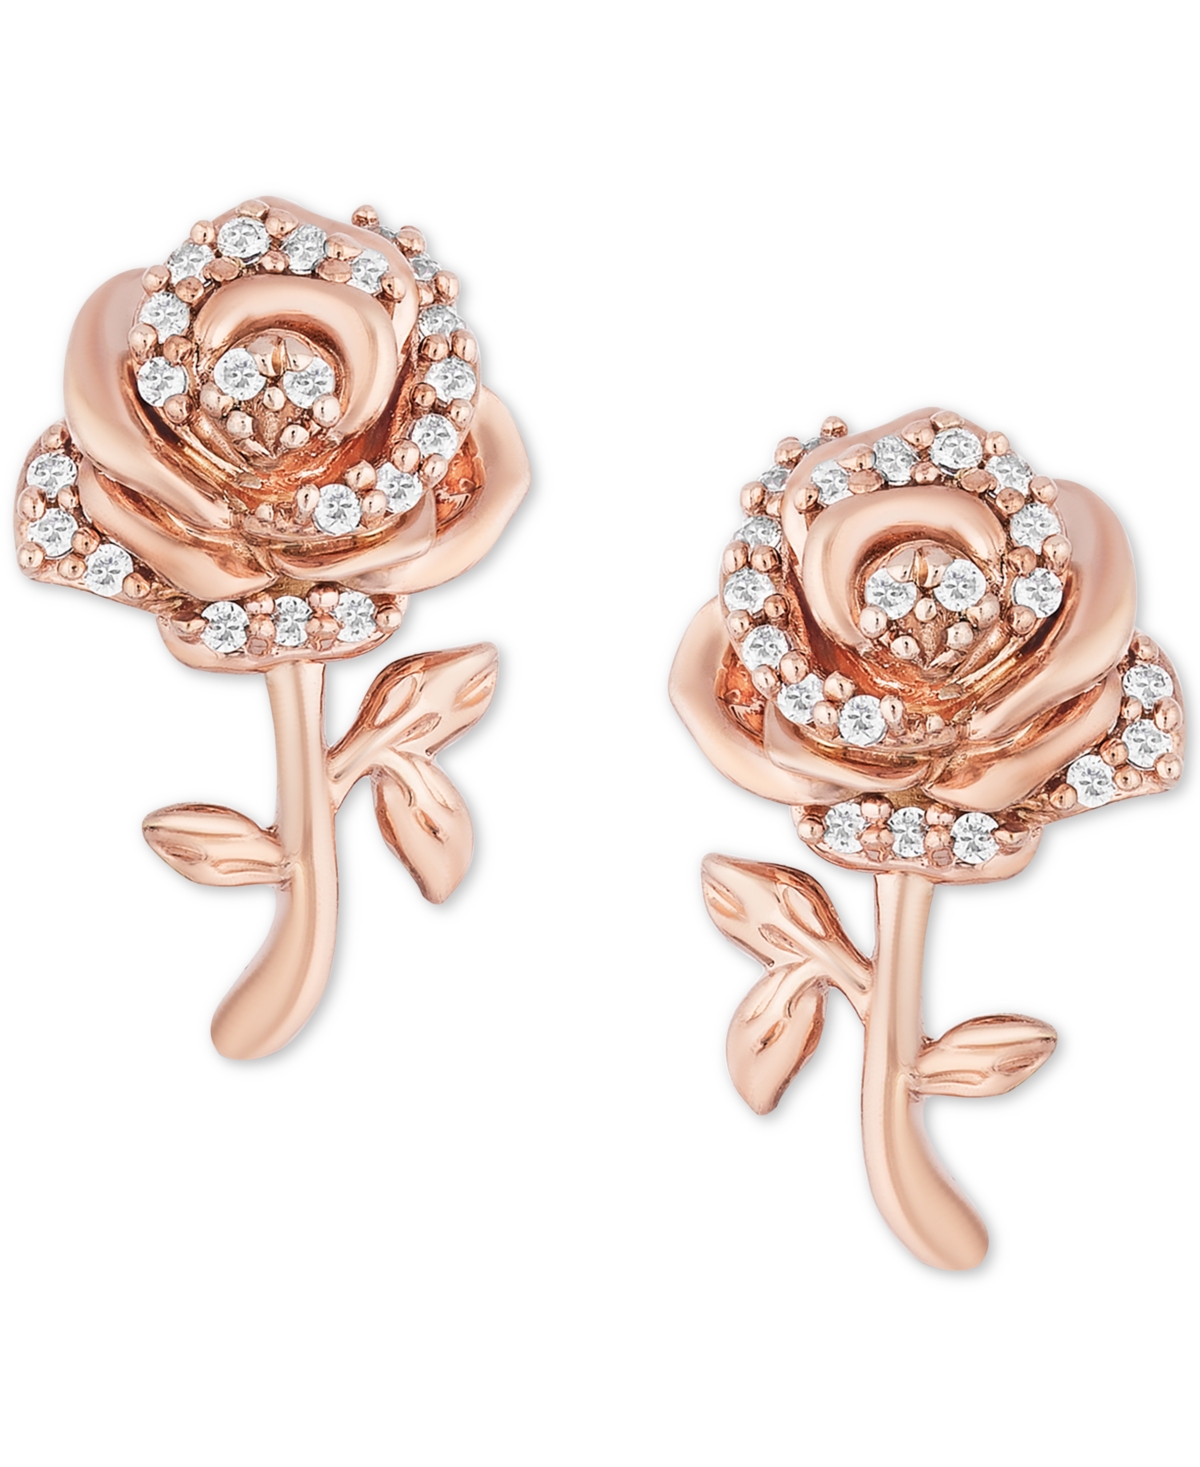 Enchanted Disney Fine Jewelry Enchanted Disney Diamond Rose Belle Stud Earrings (1/10 ct. t.w.) in 14k Rose Gold